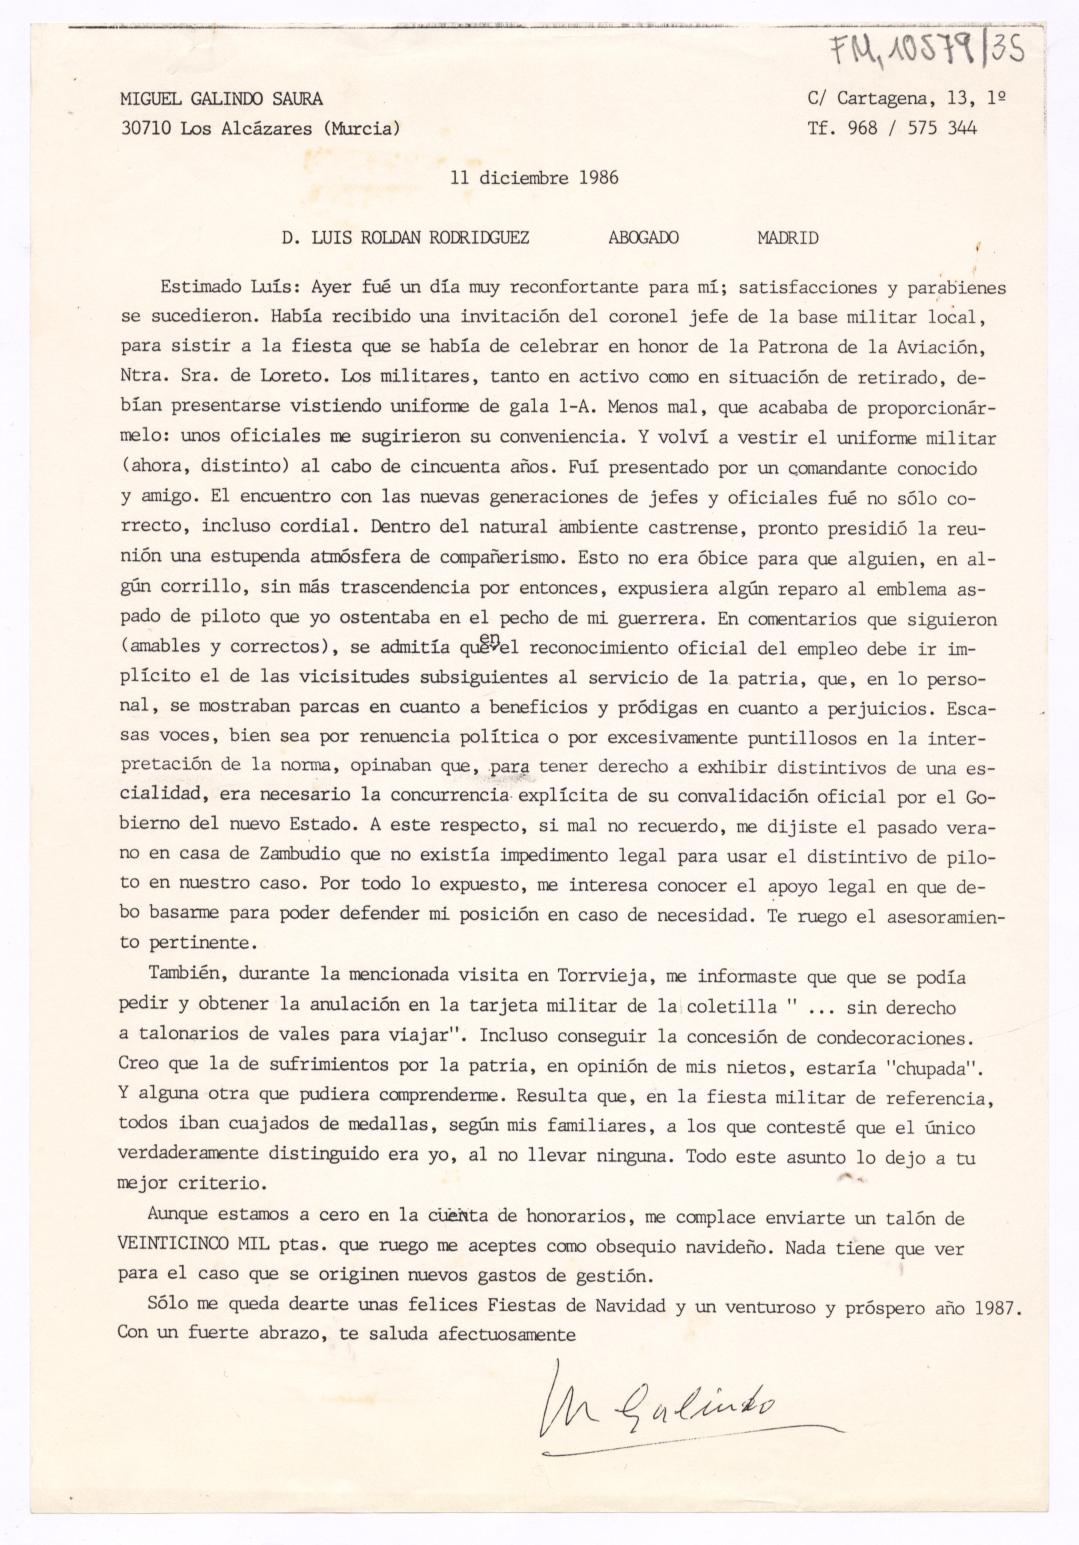 Fotocopia de una carta de Miguel Galindo al abogado Luis Roldán Rodríguez, informándole sobre algunos aspectos de su nueva etapa como militar rehabilitado.